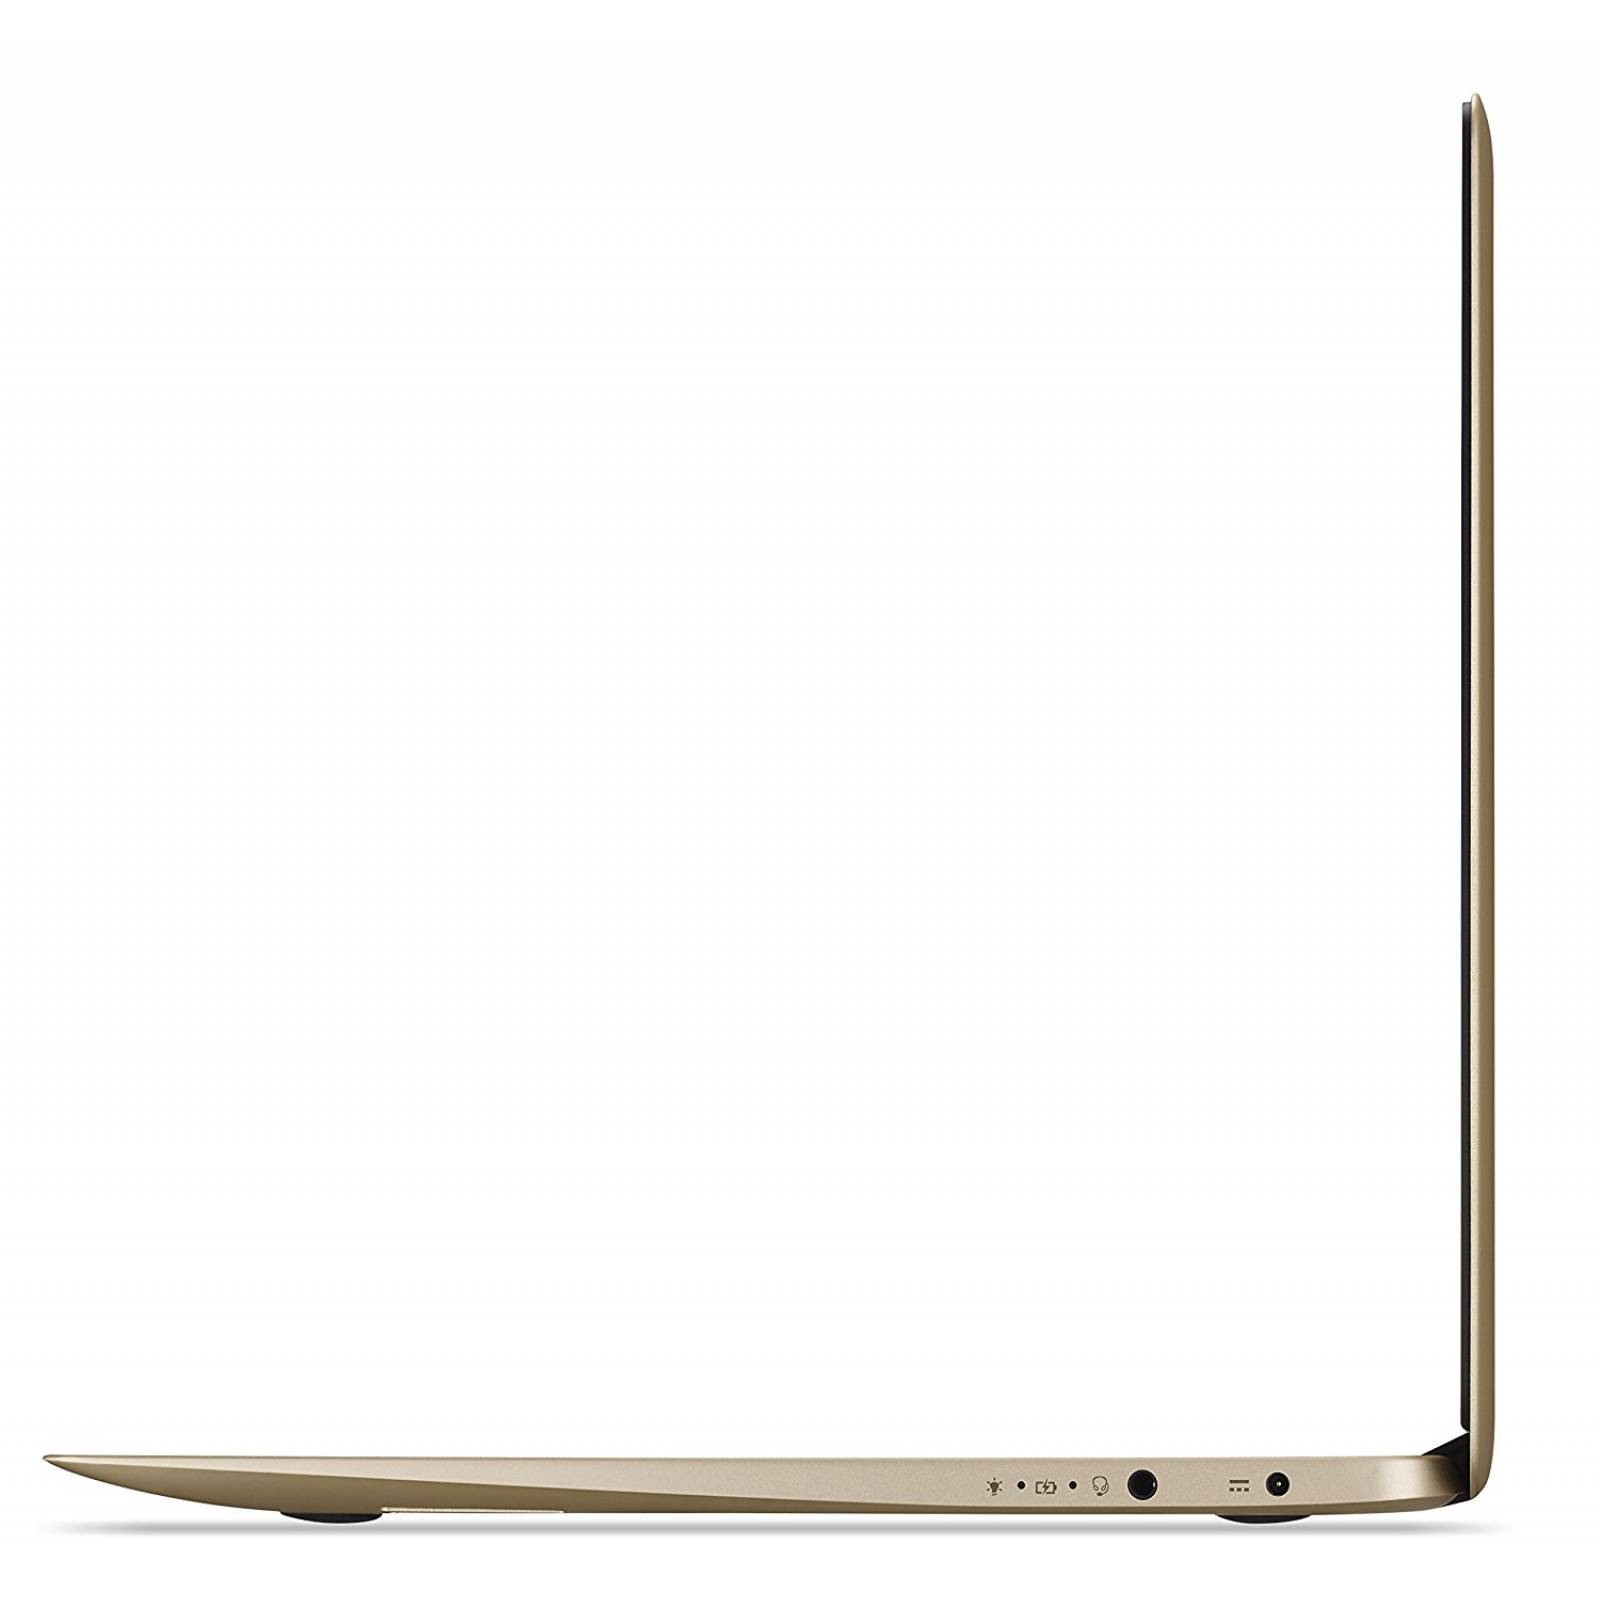 Acer Chromebook 14 aluminio 14 pulgadas HD completo  -Dorado